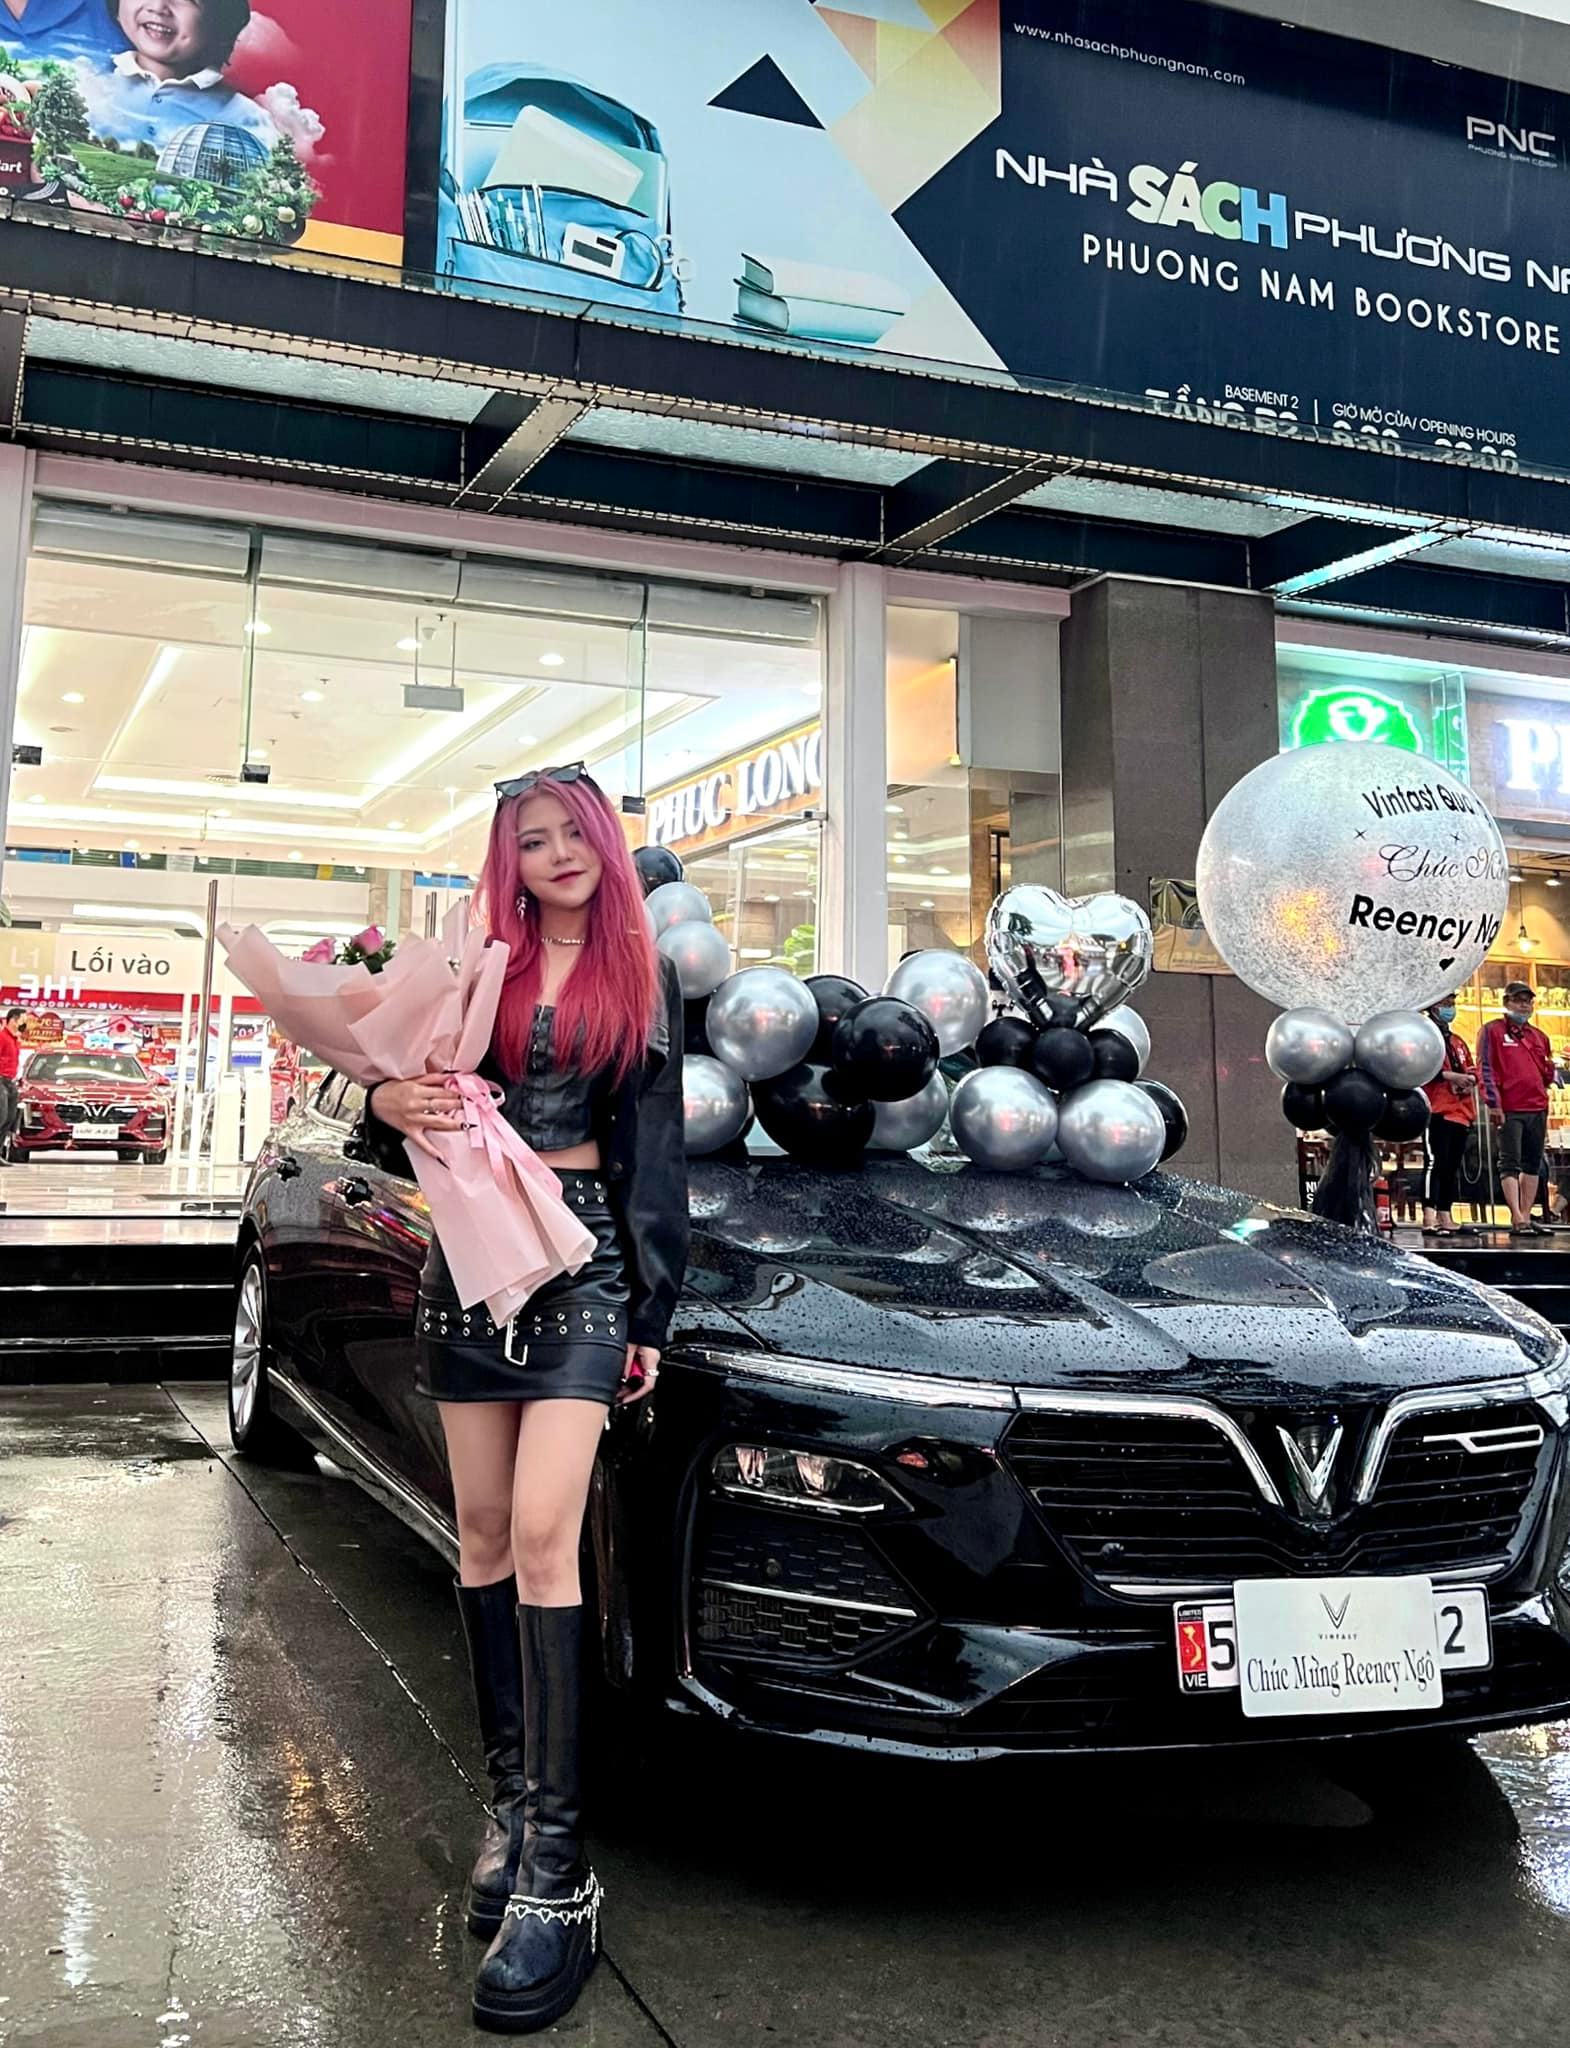 Ở tuổi 22, Reency Ngô khiến nhiều người choáng váng khi tự mình mua được chiếc xe hơi khoảng 1 tỷ đồng.